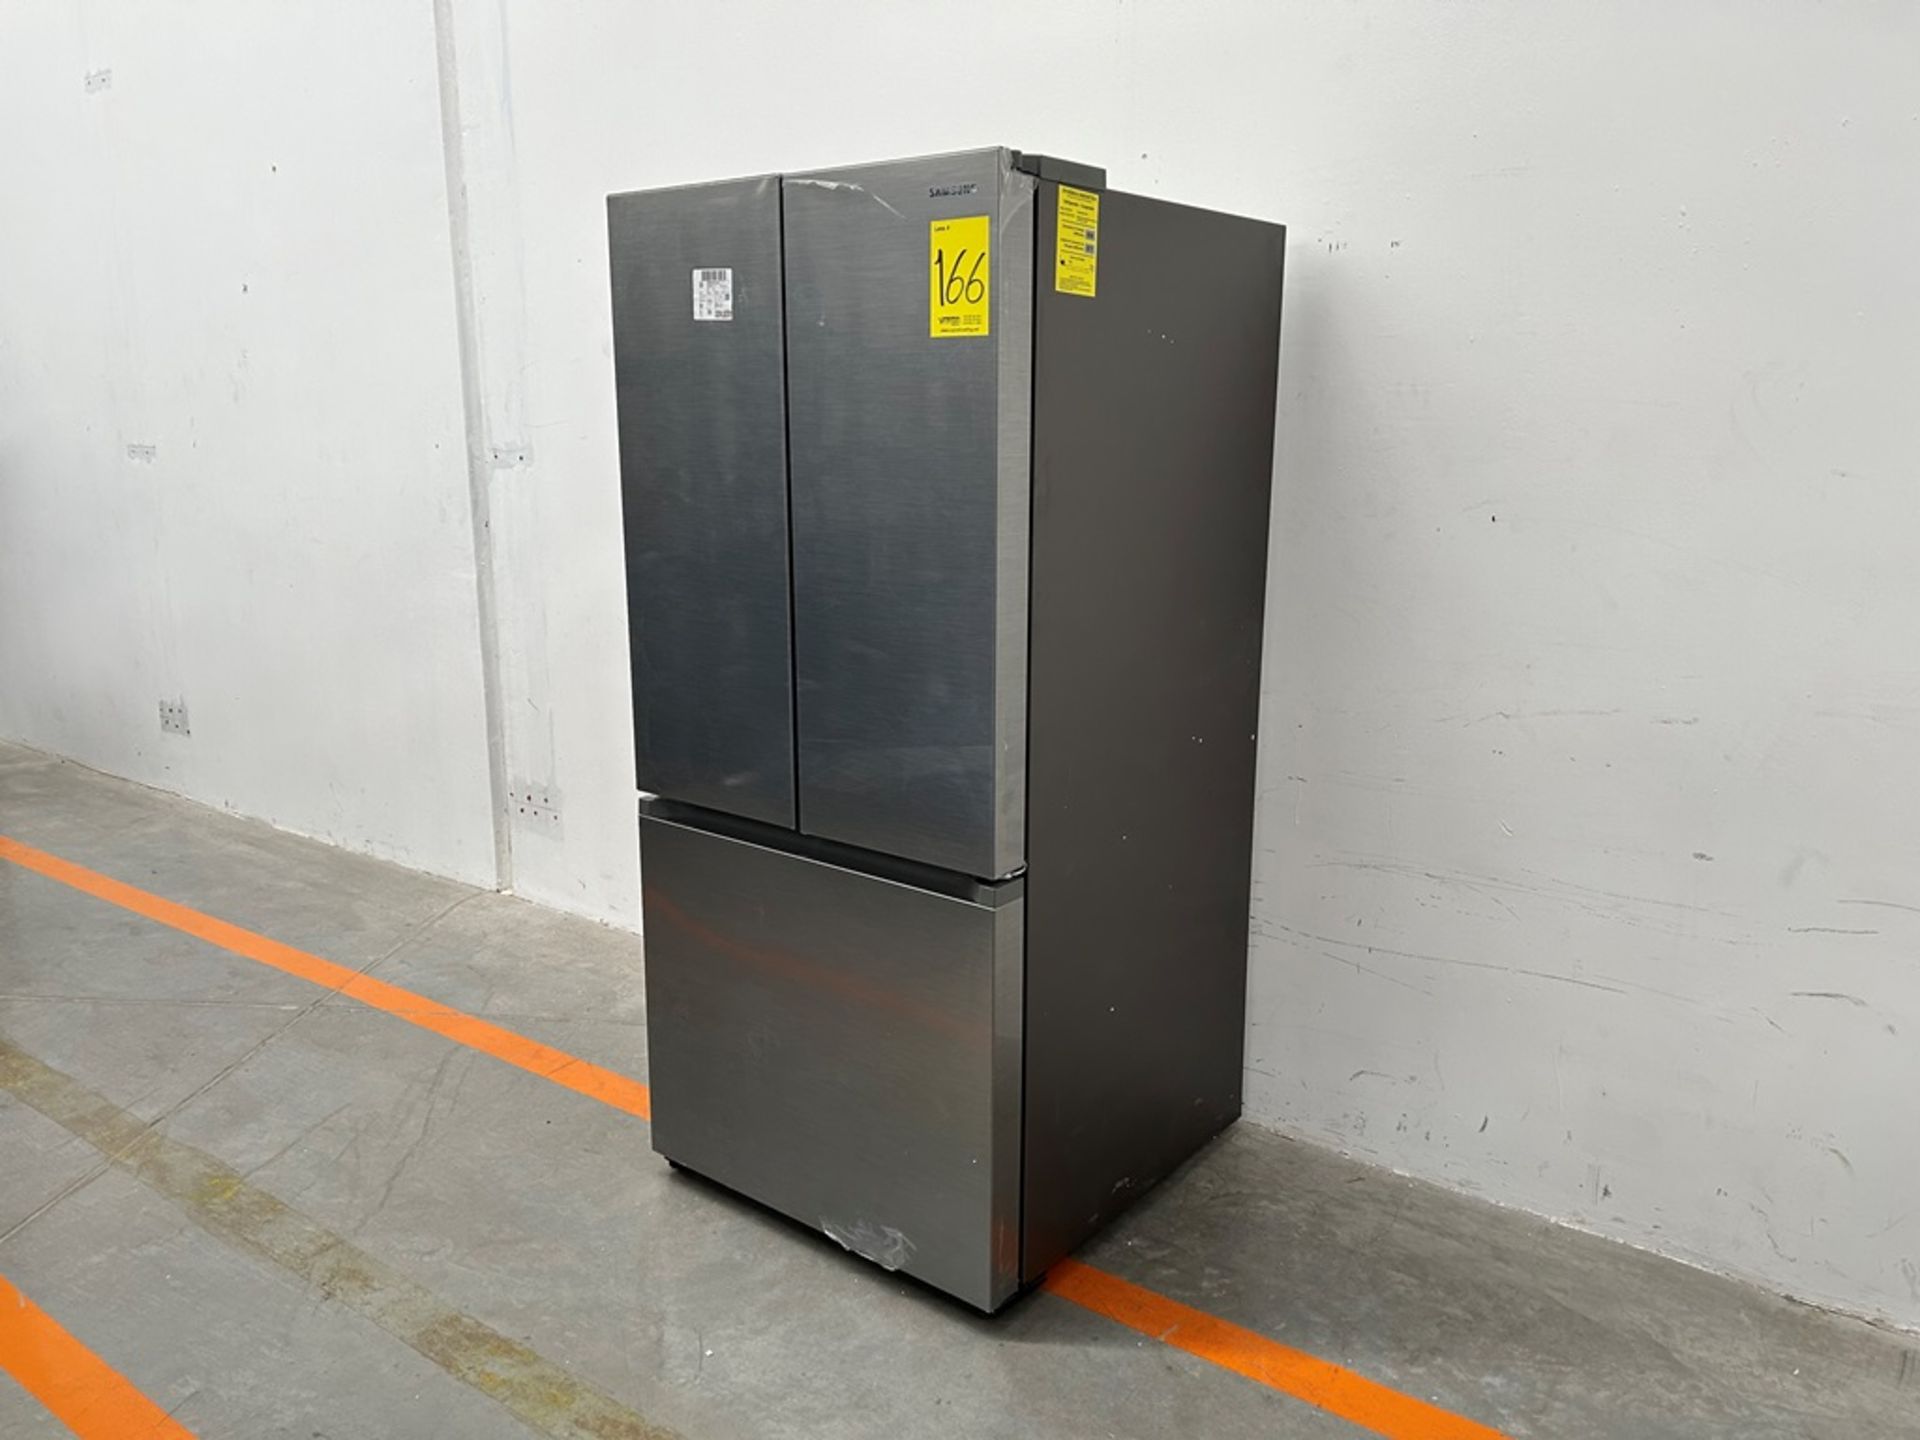 (NUEVO) Refrigerador Marca SAMSUNG, Modelo RF25C5151S9, Serie 01153L, Color GRIS - Image 3 of 11